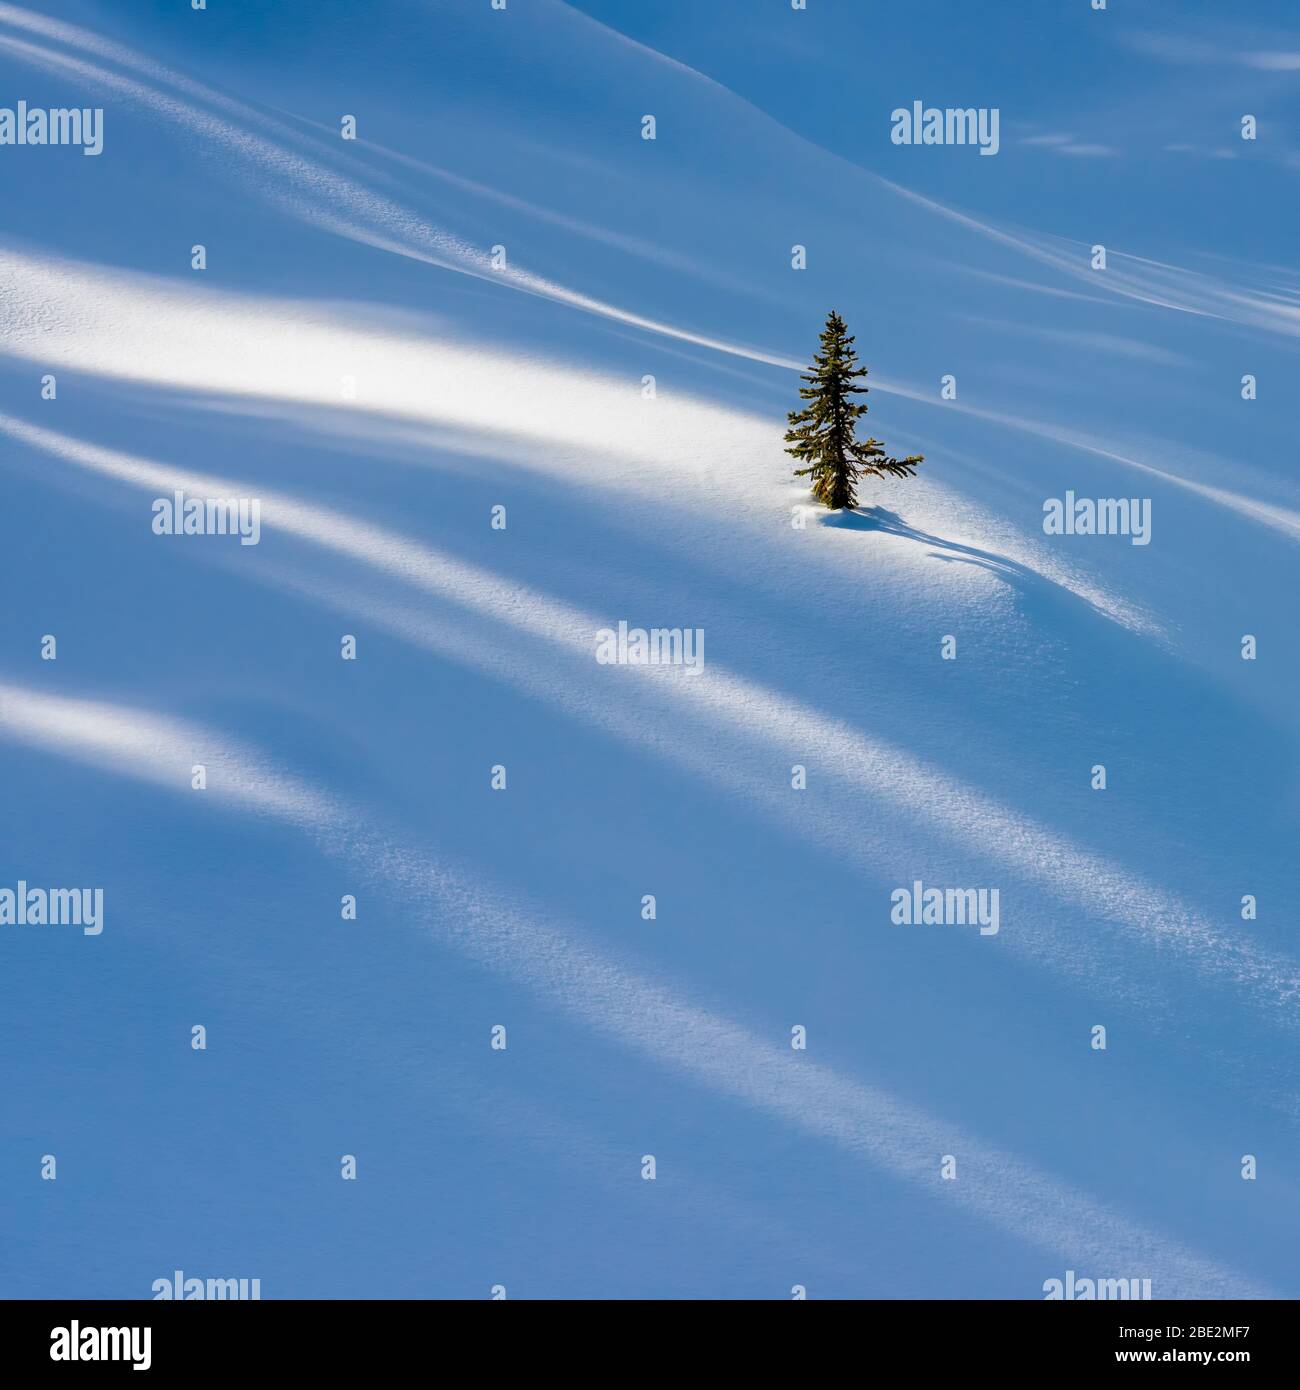 Pins solitaires partiellement enterrés dans une dérive de neige avec une lumière et des ombres étouffées dans la neige fraîche au-dessus du lac Peyto, parc national Banff, Canada Banque D'Images